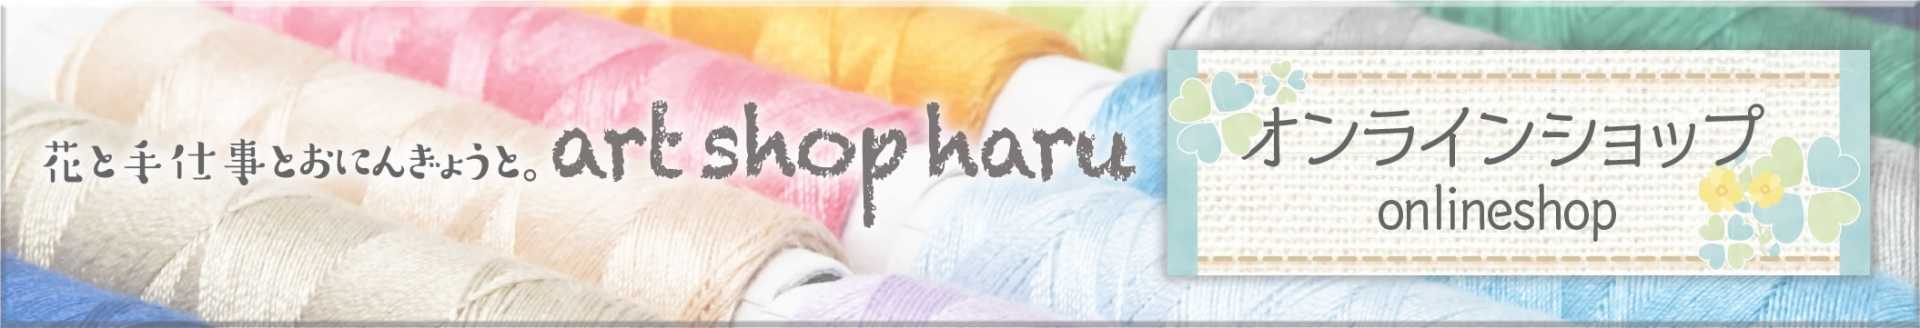 art shop haru